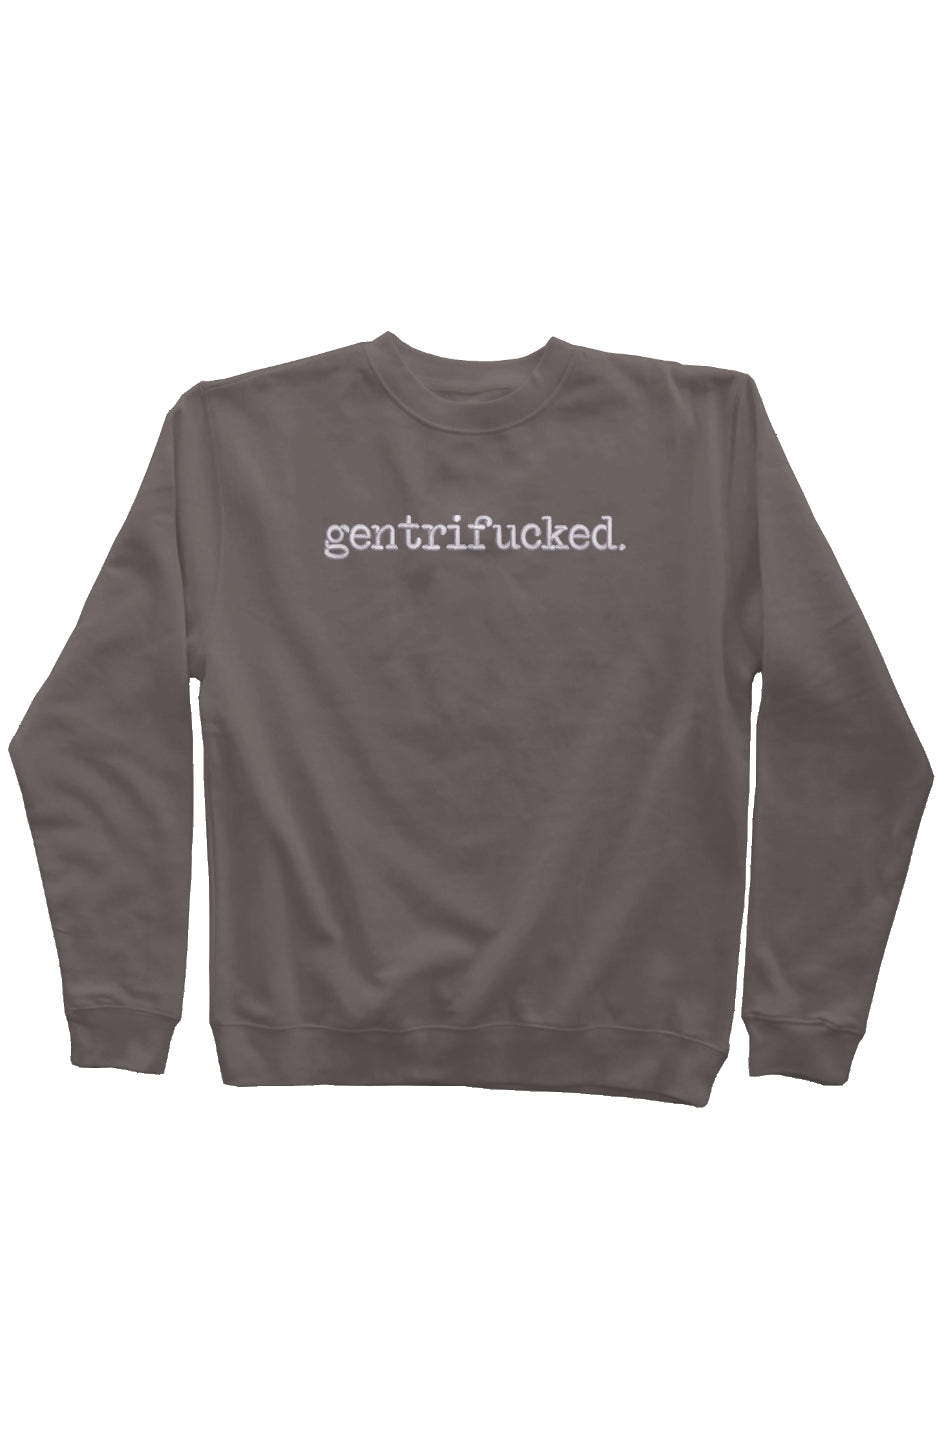 gentrifucked